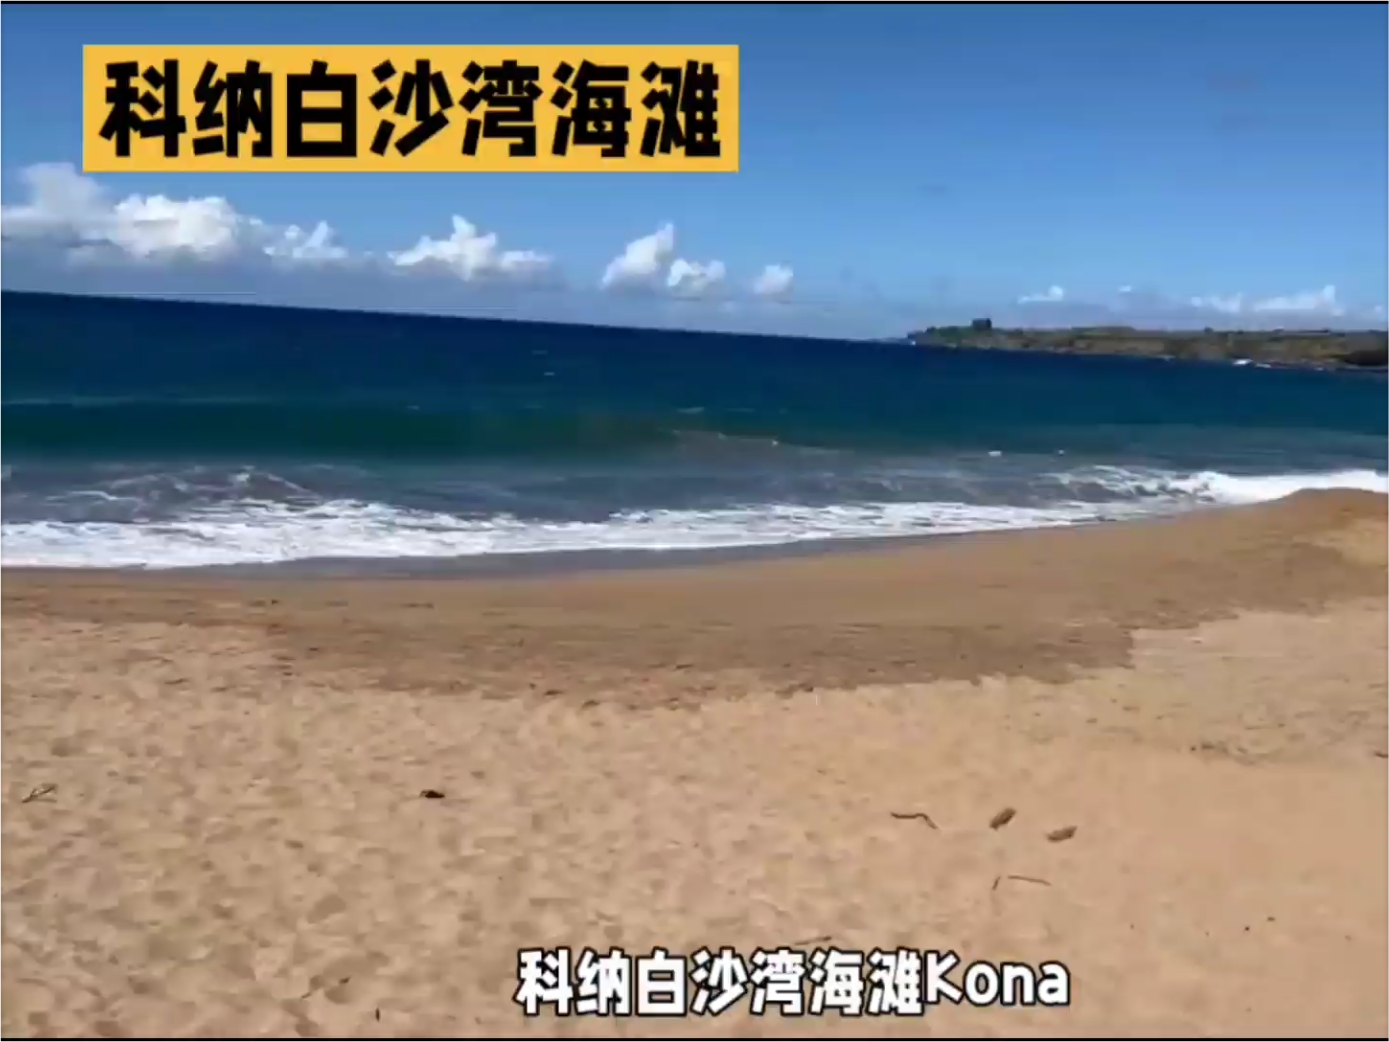 科纳白沙湾海滩（Kona White Sands Beach）位于美国夏威夷大岛的西海岸，是夏威夷著